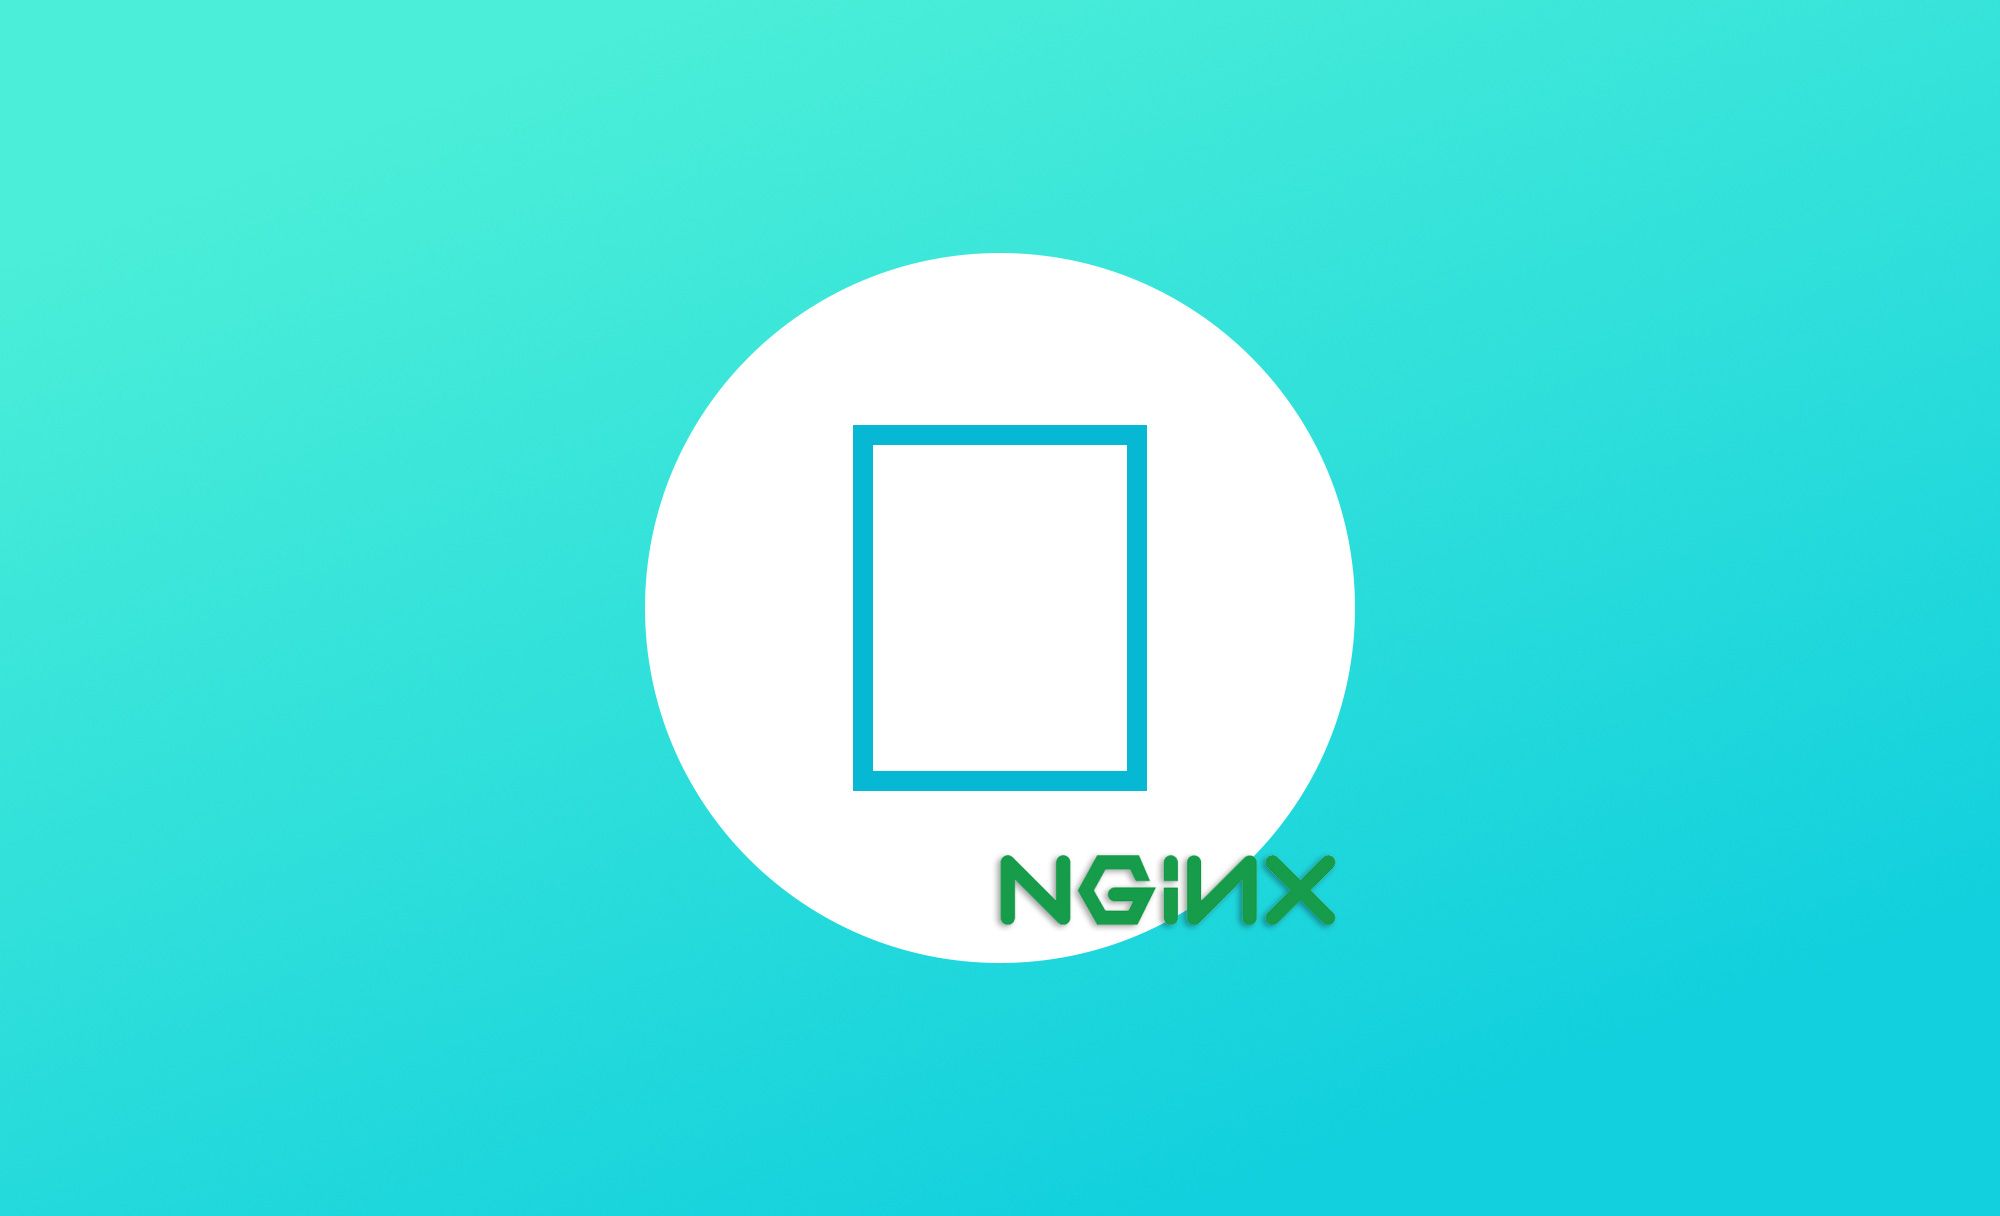 Nginx服务器下解决字体图标跨域的问题